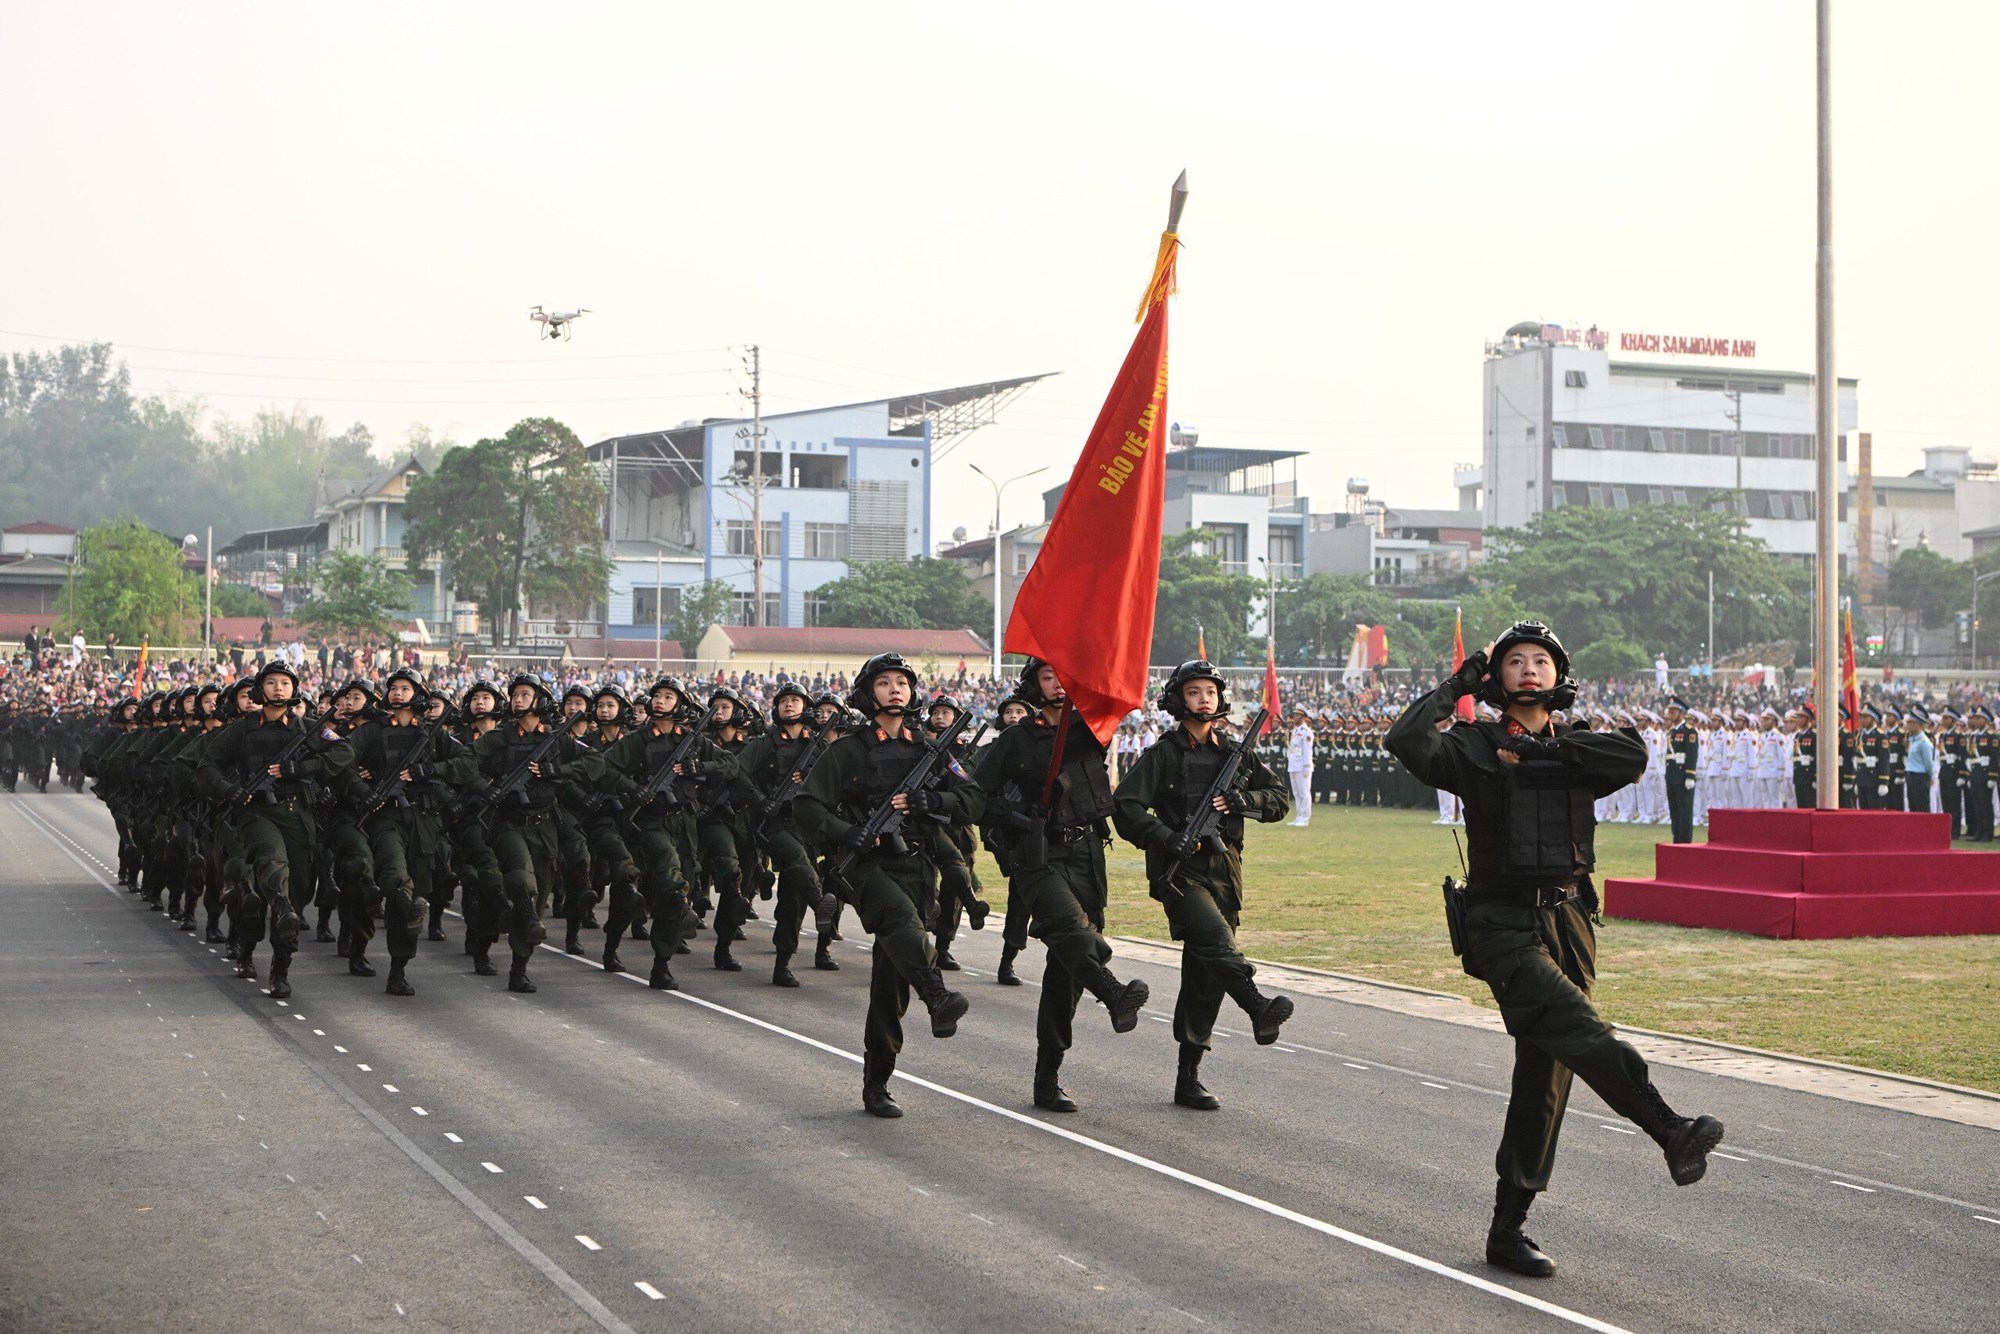 Hợp luyện các lực lượng diễu binh, diễu hành kỷ niệm 70 năm Chiến thắng Điện Biên Phủ - ảnh 11